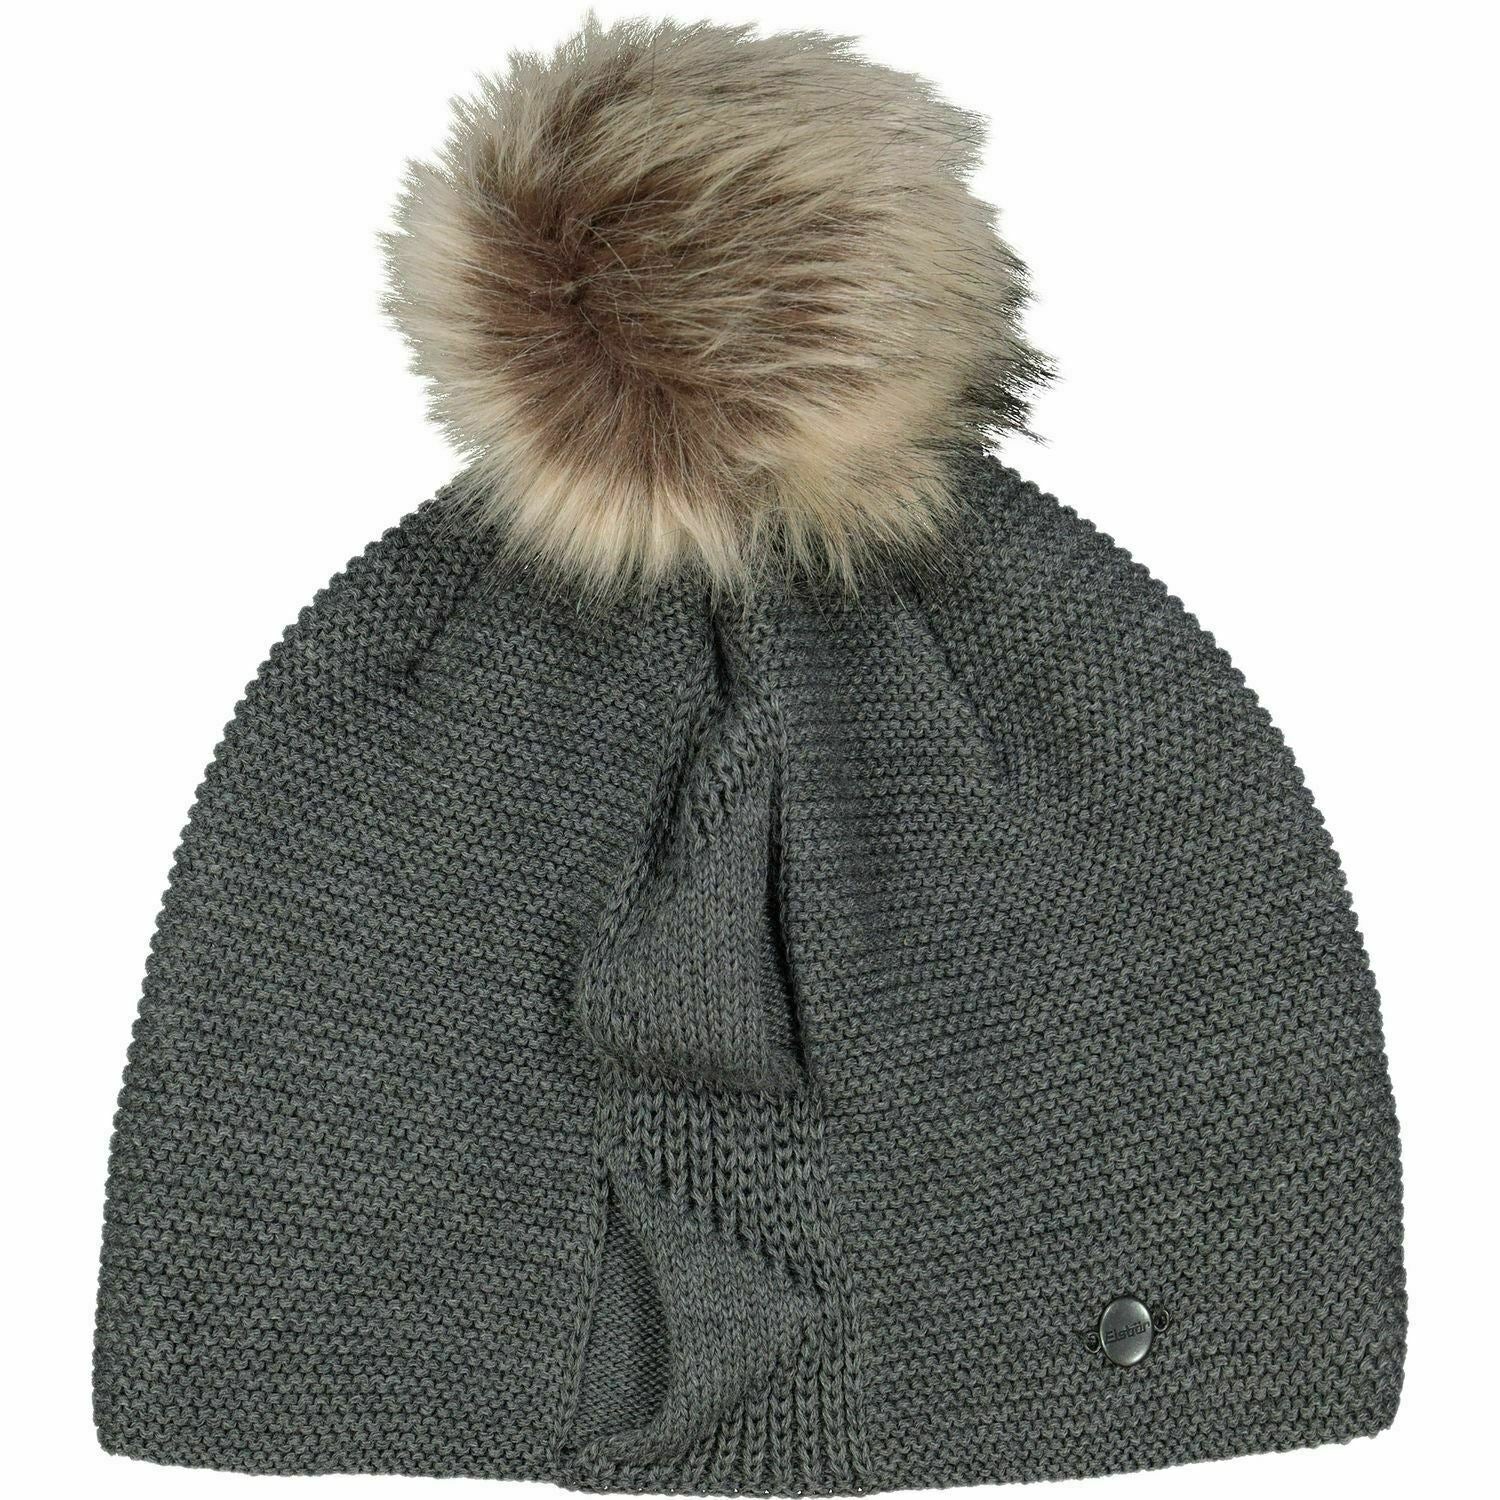 EISBAR Women's Ski Hat Winter Beanie Hat Merino Wool Mix Dark Grey One Size